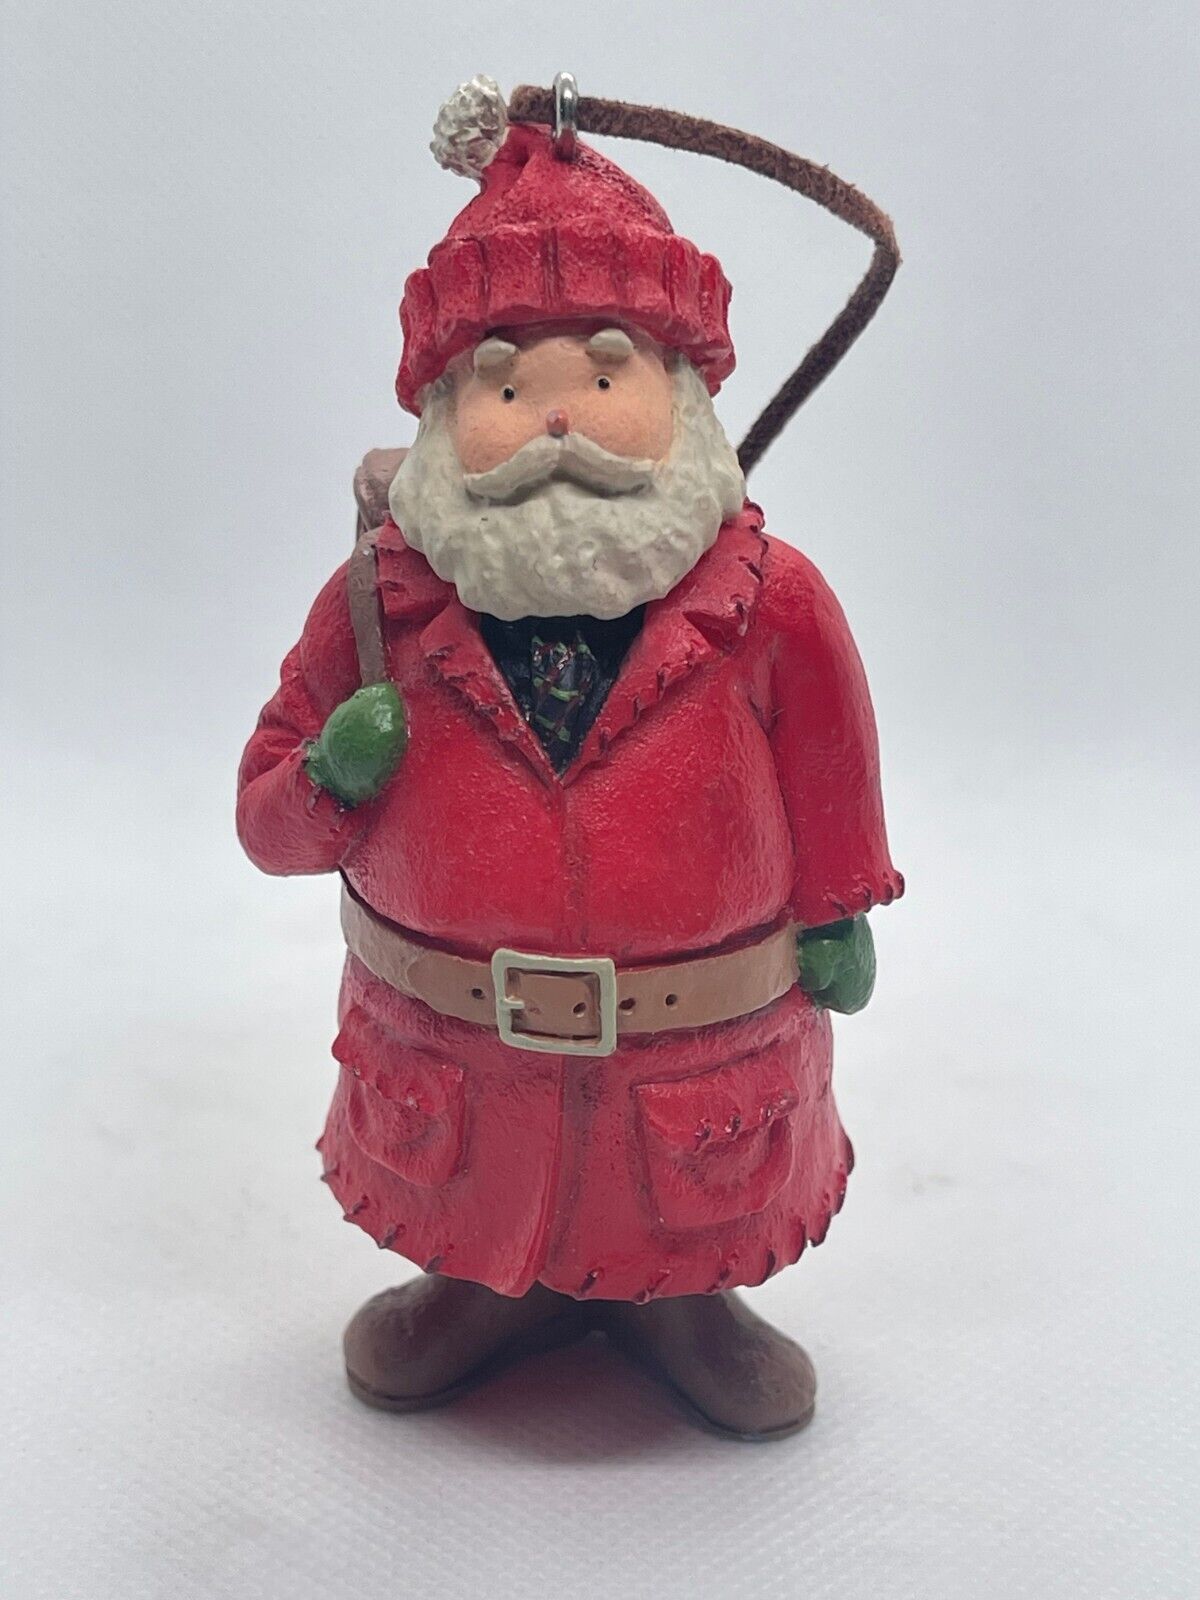 2003 Hallmark *Kris Kringle* Santa Claus - Keepsake Christmas Ornament